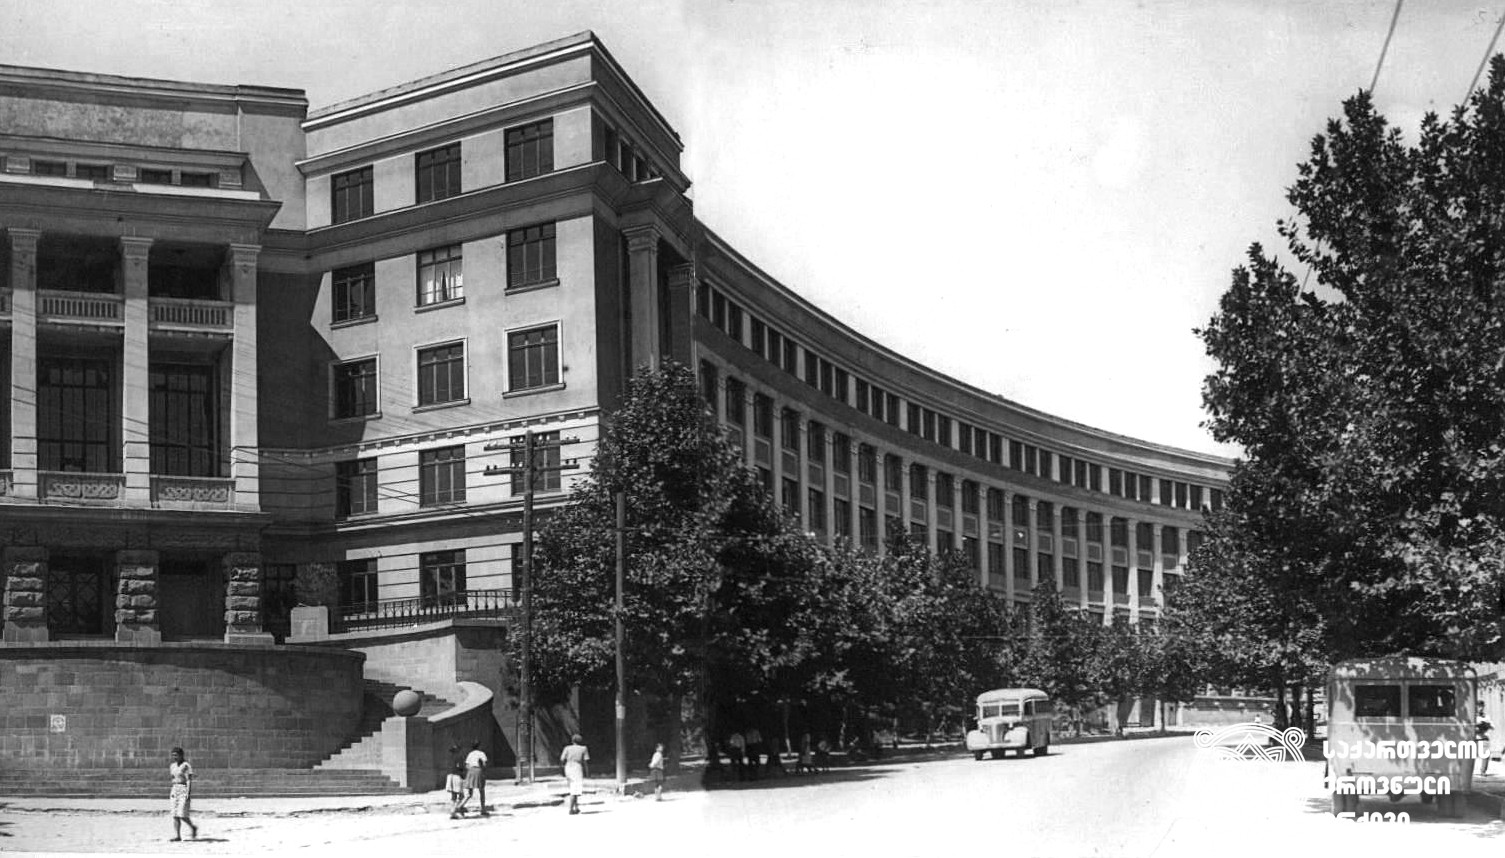 ტექნიკური უნივერსიტეტის შენობა, 1940-იანი წლები. 
<br>Building of the Technical University, 1940s.